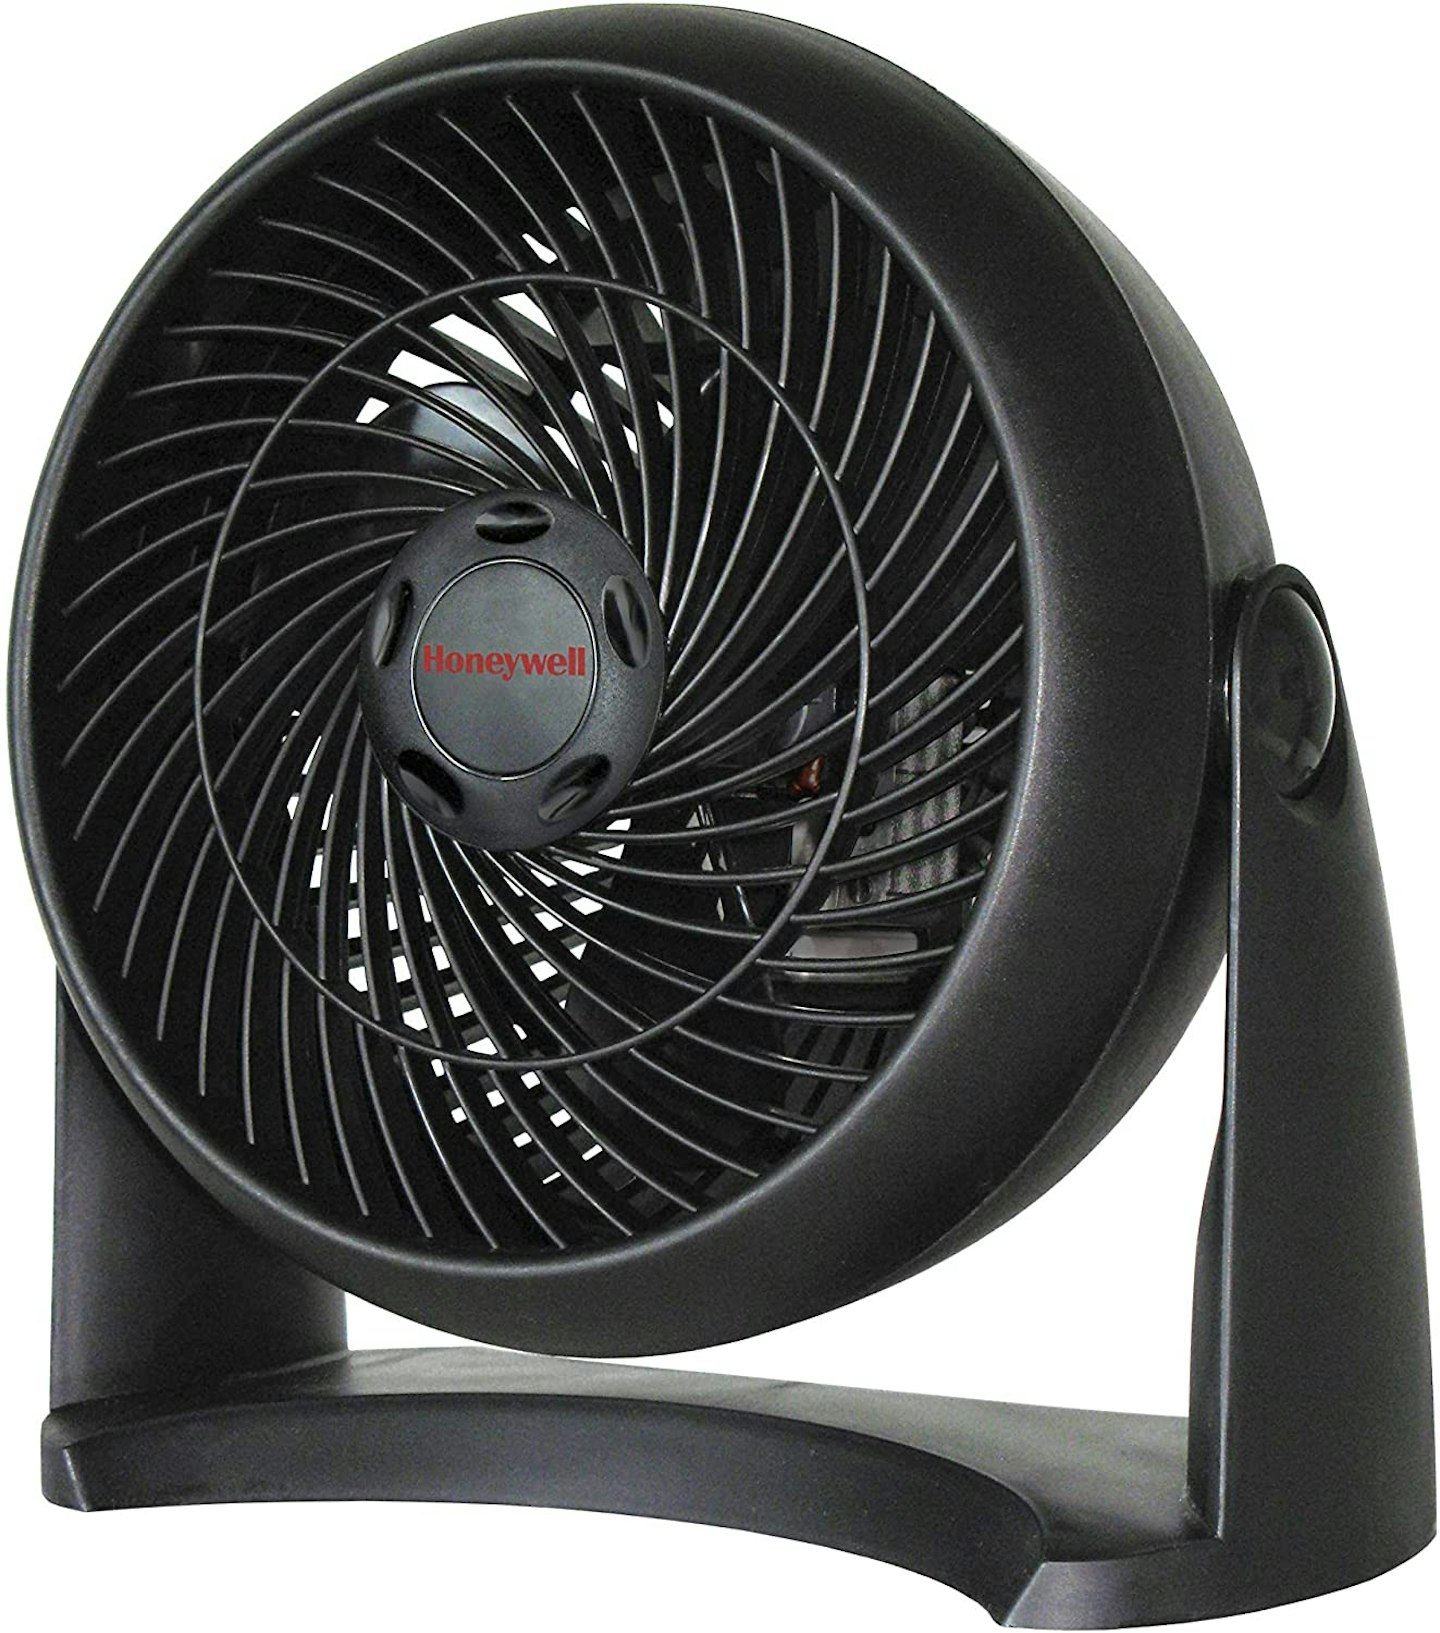 Honeywell HT900E1 Turbo Fan